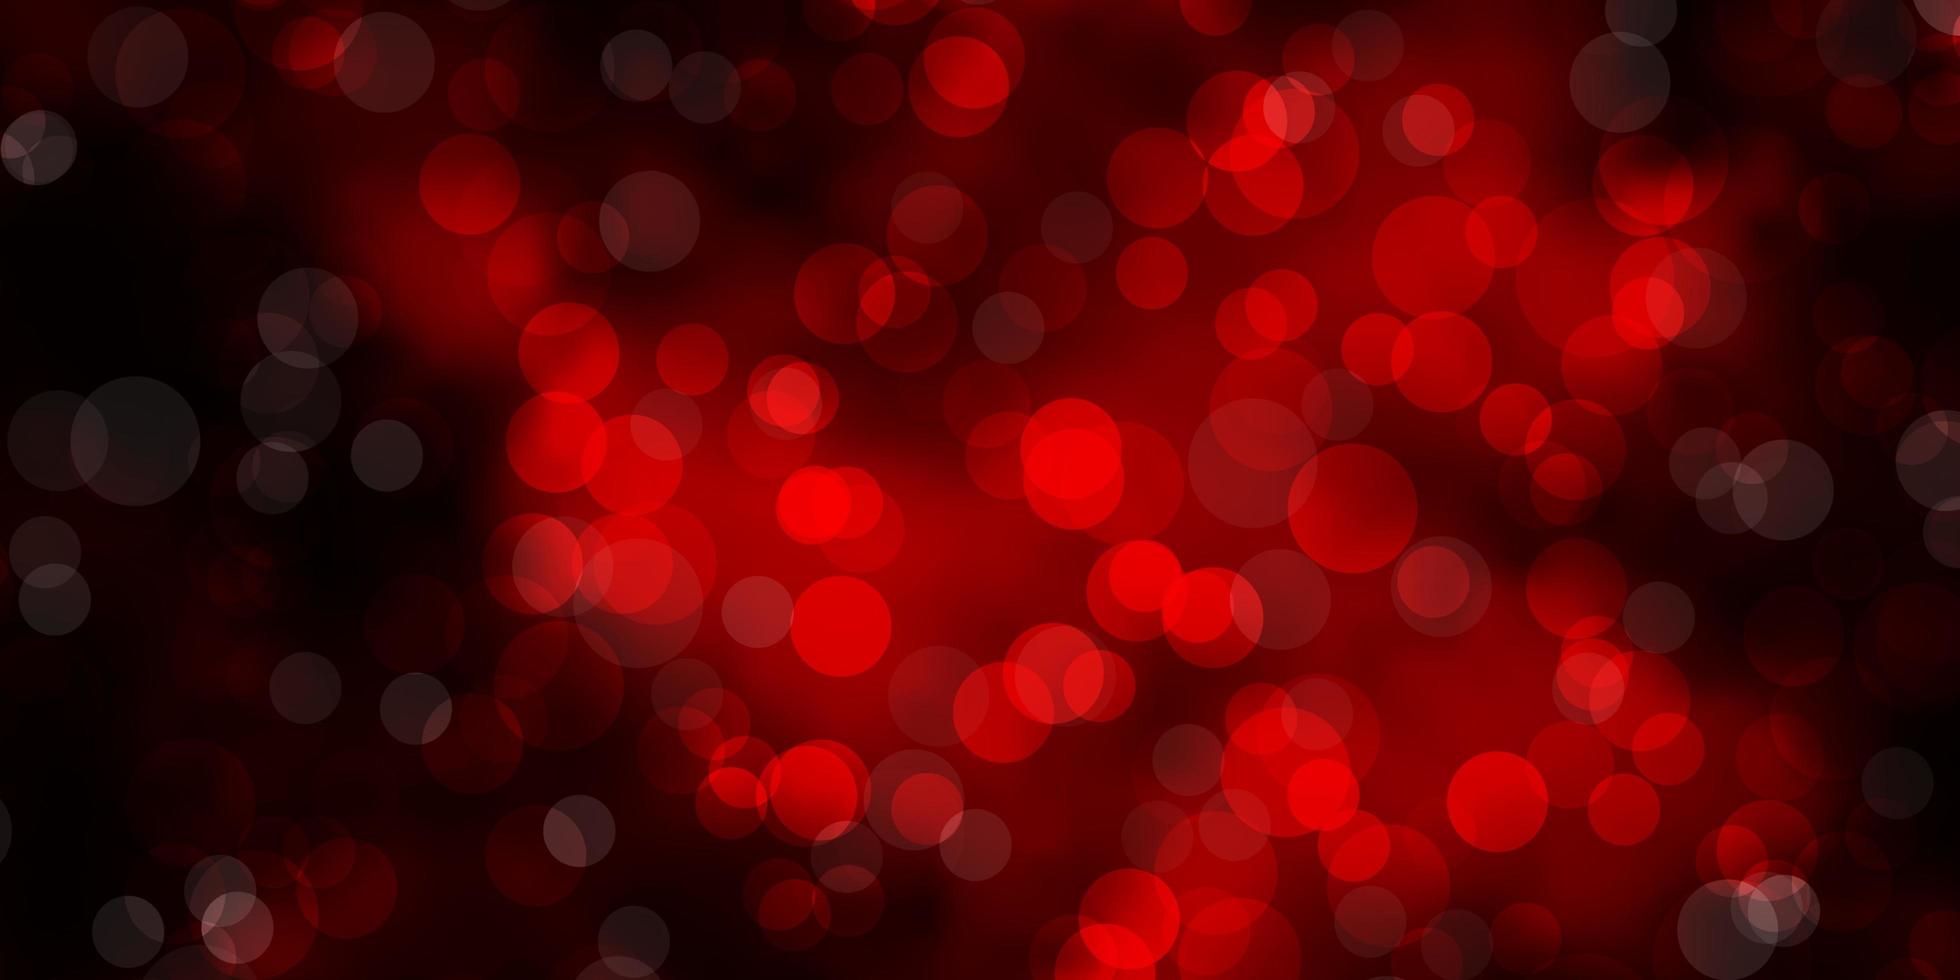 sfondo vettoriale rosso scuro con cerchi. illustrazione astratta glitter con gocce colorate. modello per siti Web, pagine di destinazione.